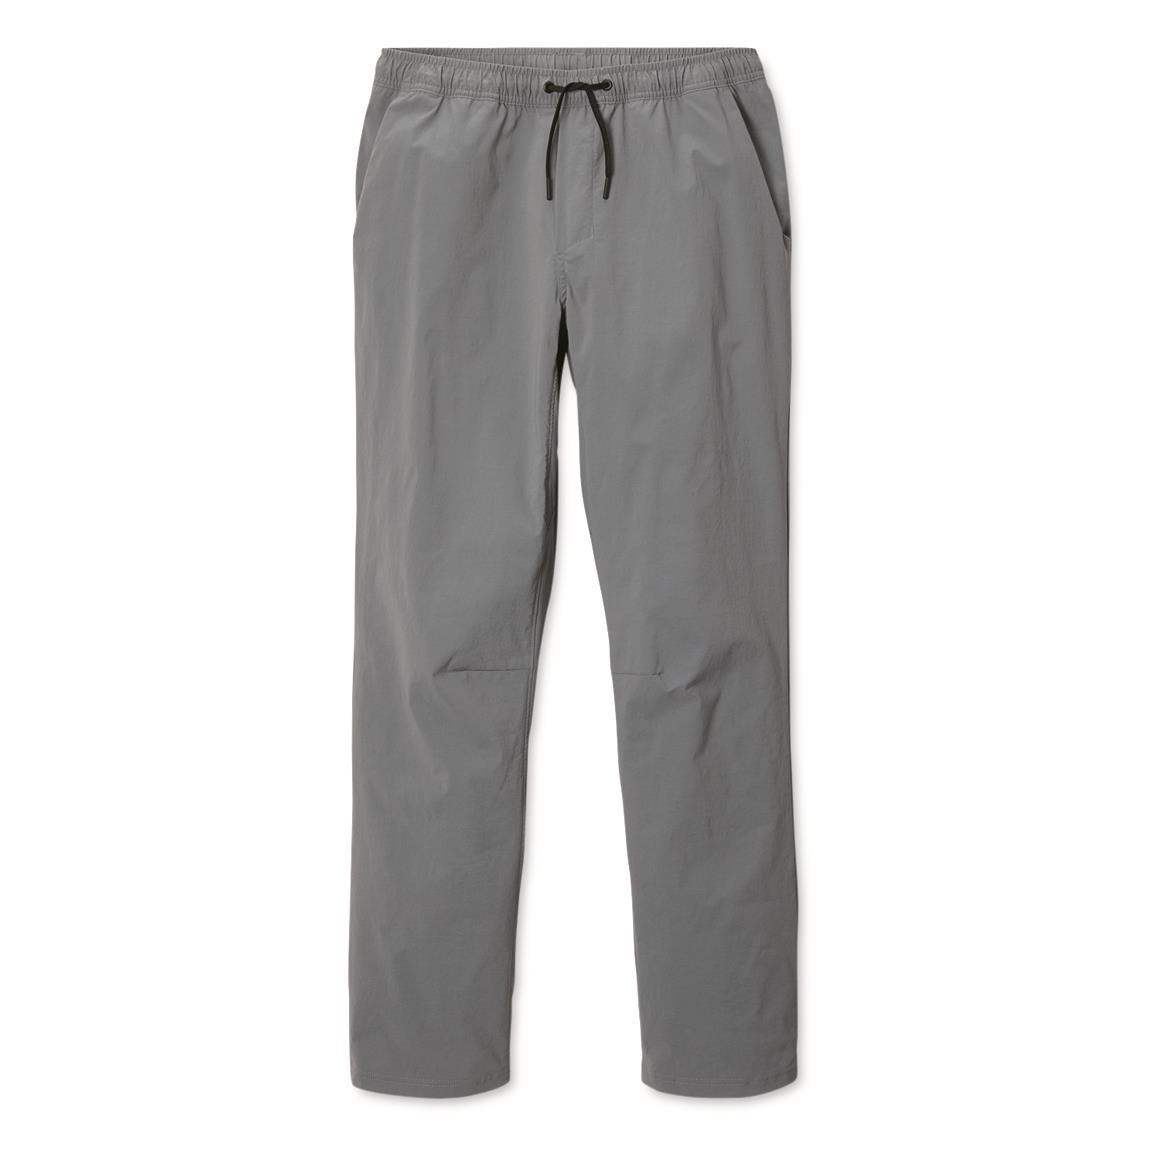 Mountain Hardwear Men's Basin Pull-On Pants, Foil Grey